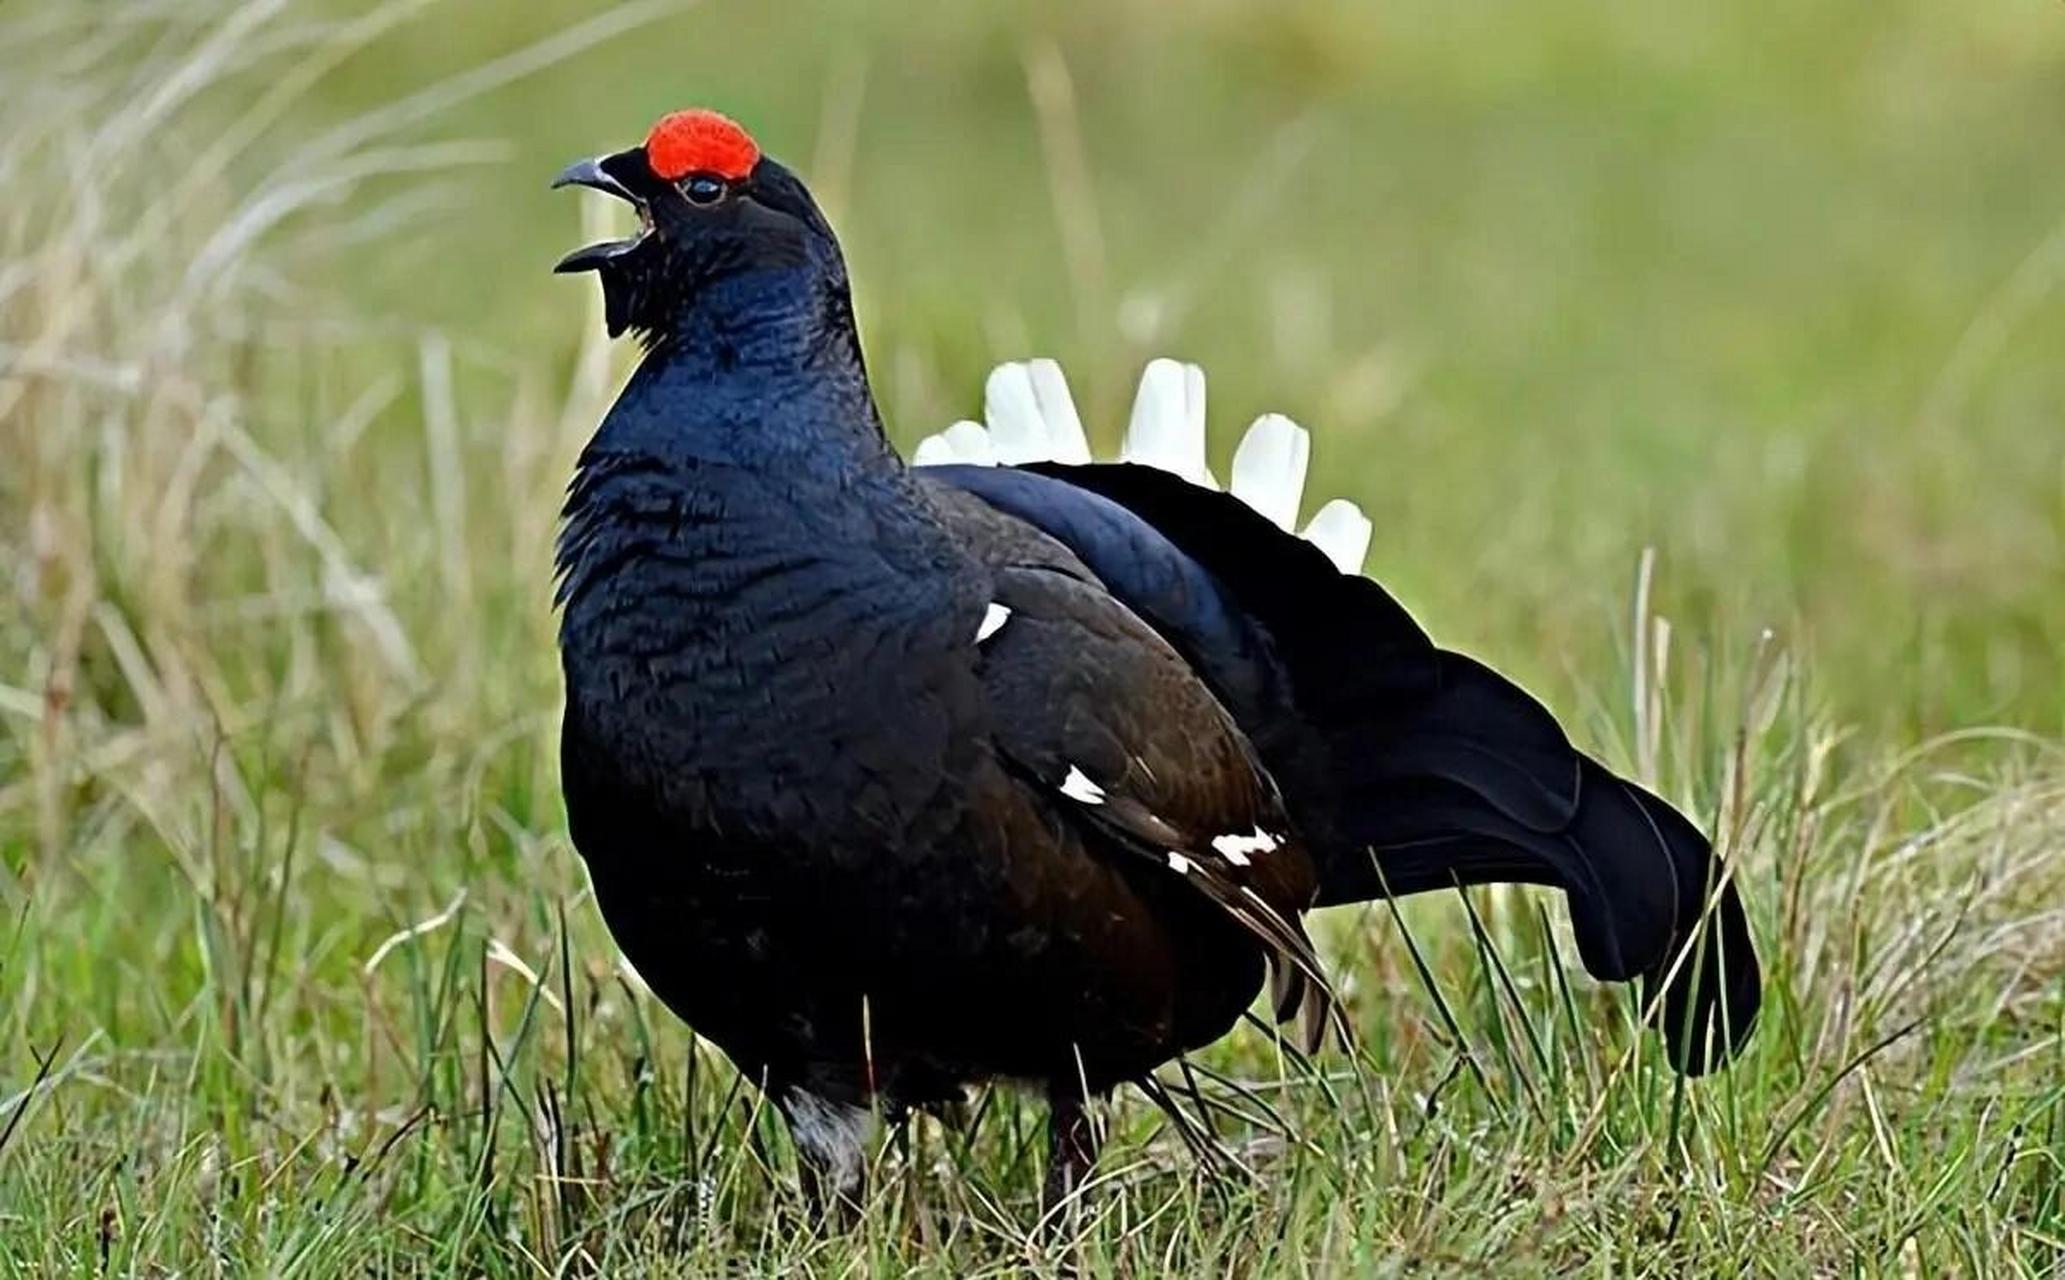 黑琴鸡 黑琴鸡又称黑野鸡,乌鸡,是鸡形目松鸡科琴鸡属的鸟类动物